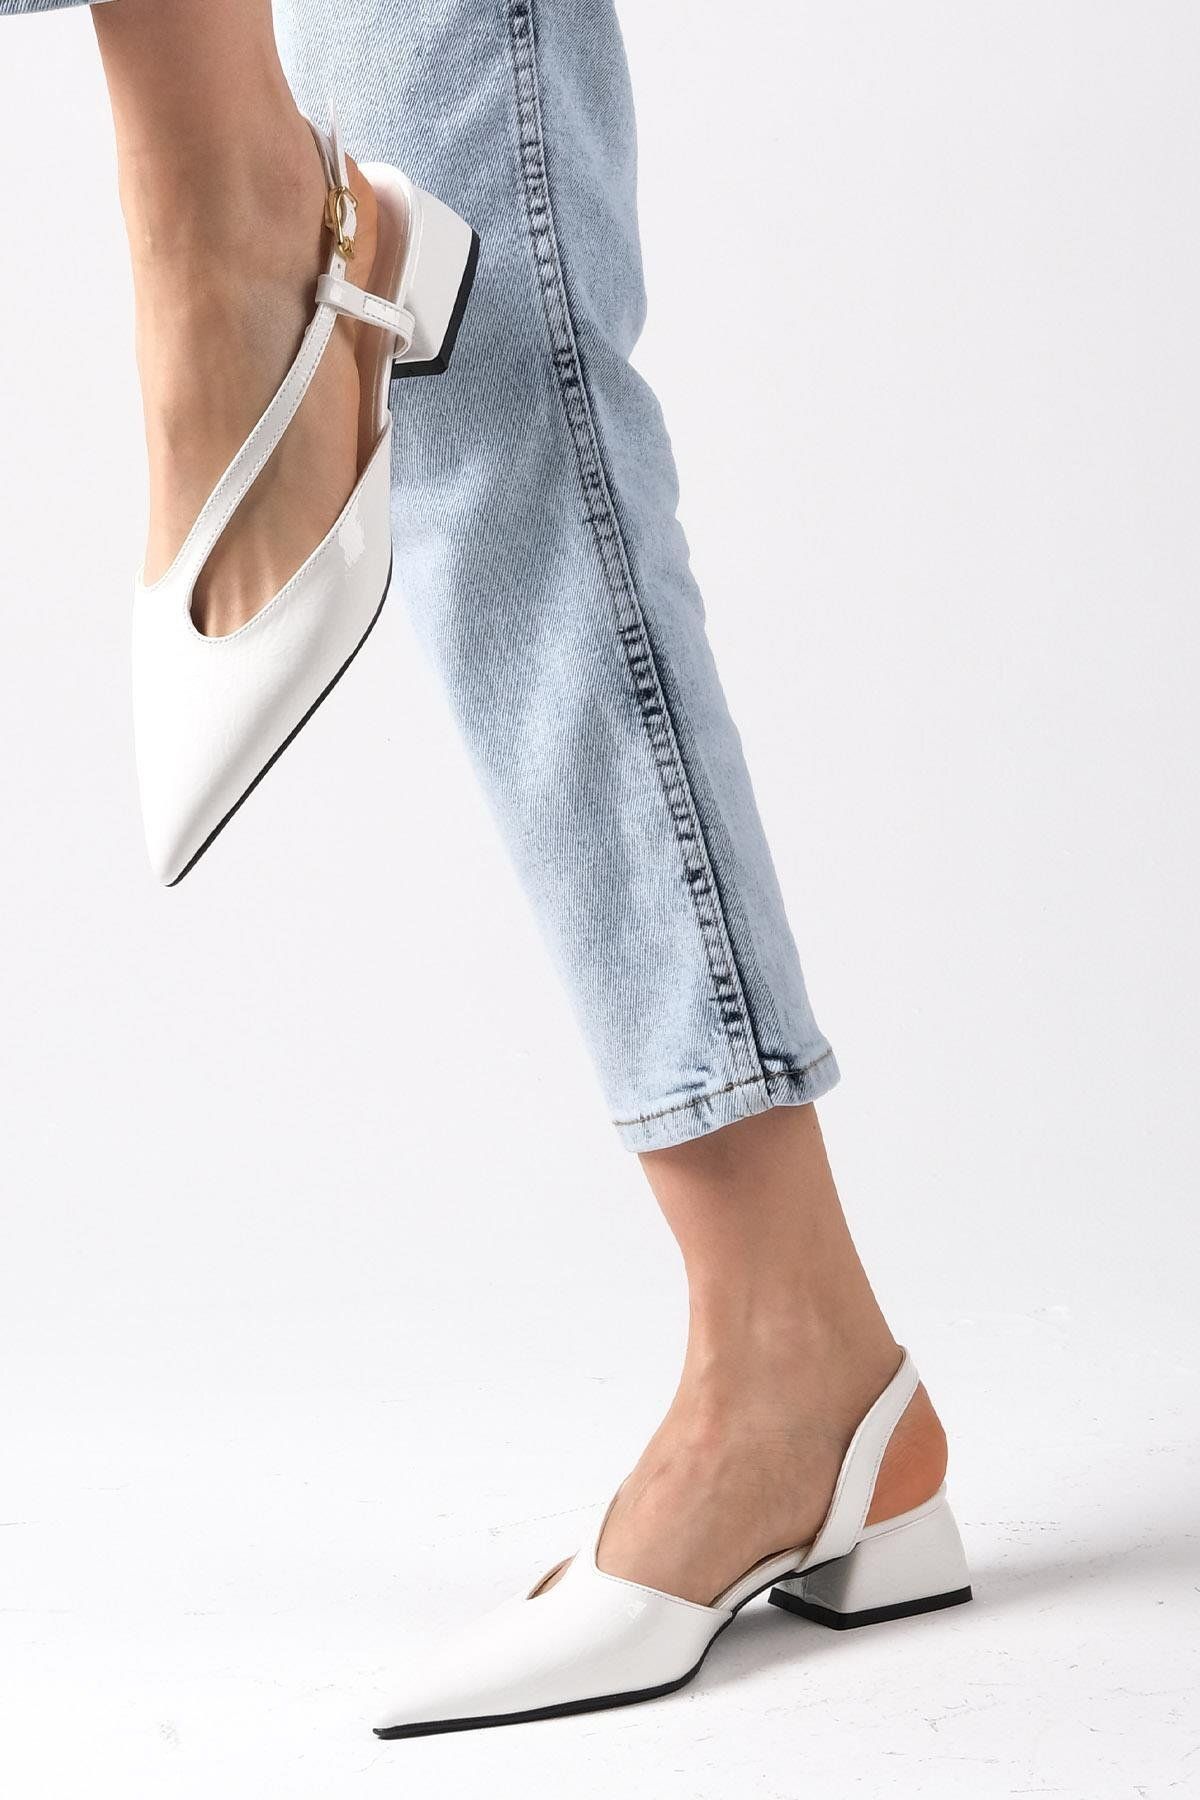 Mio Gusto Annie Beyaz Renk Rugan Kadın Kısa Topuklu Ayakkabı